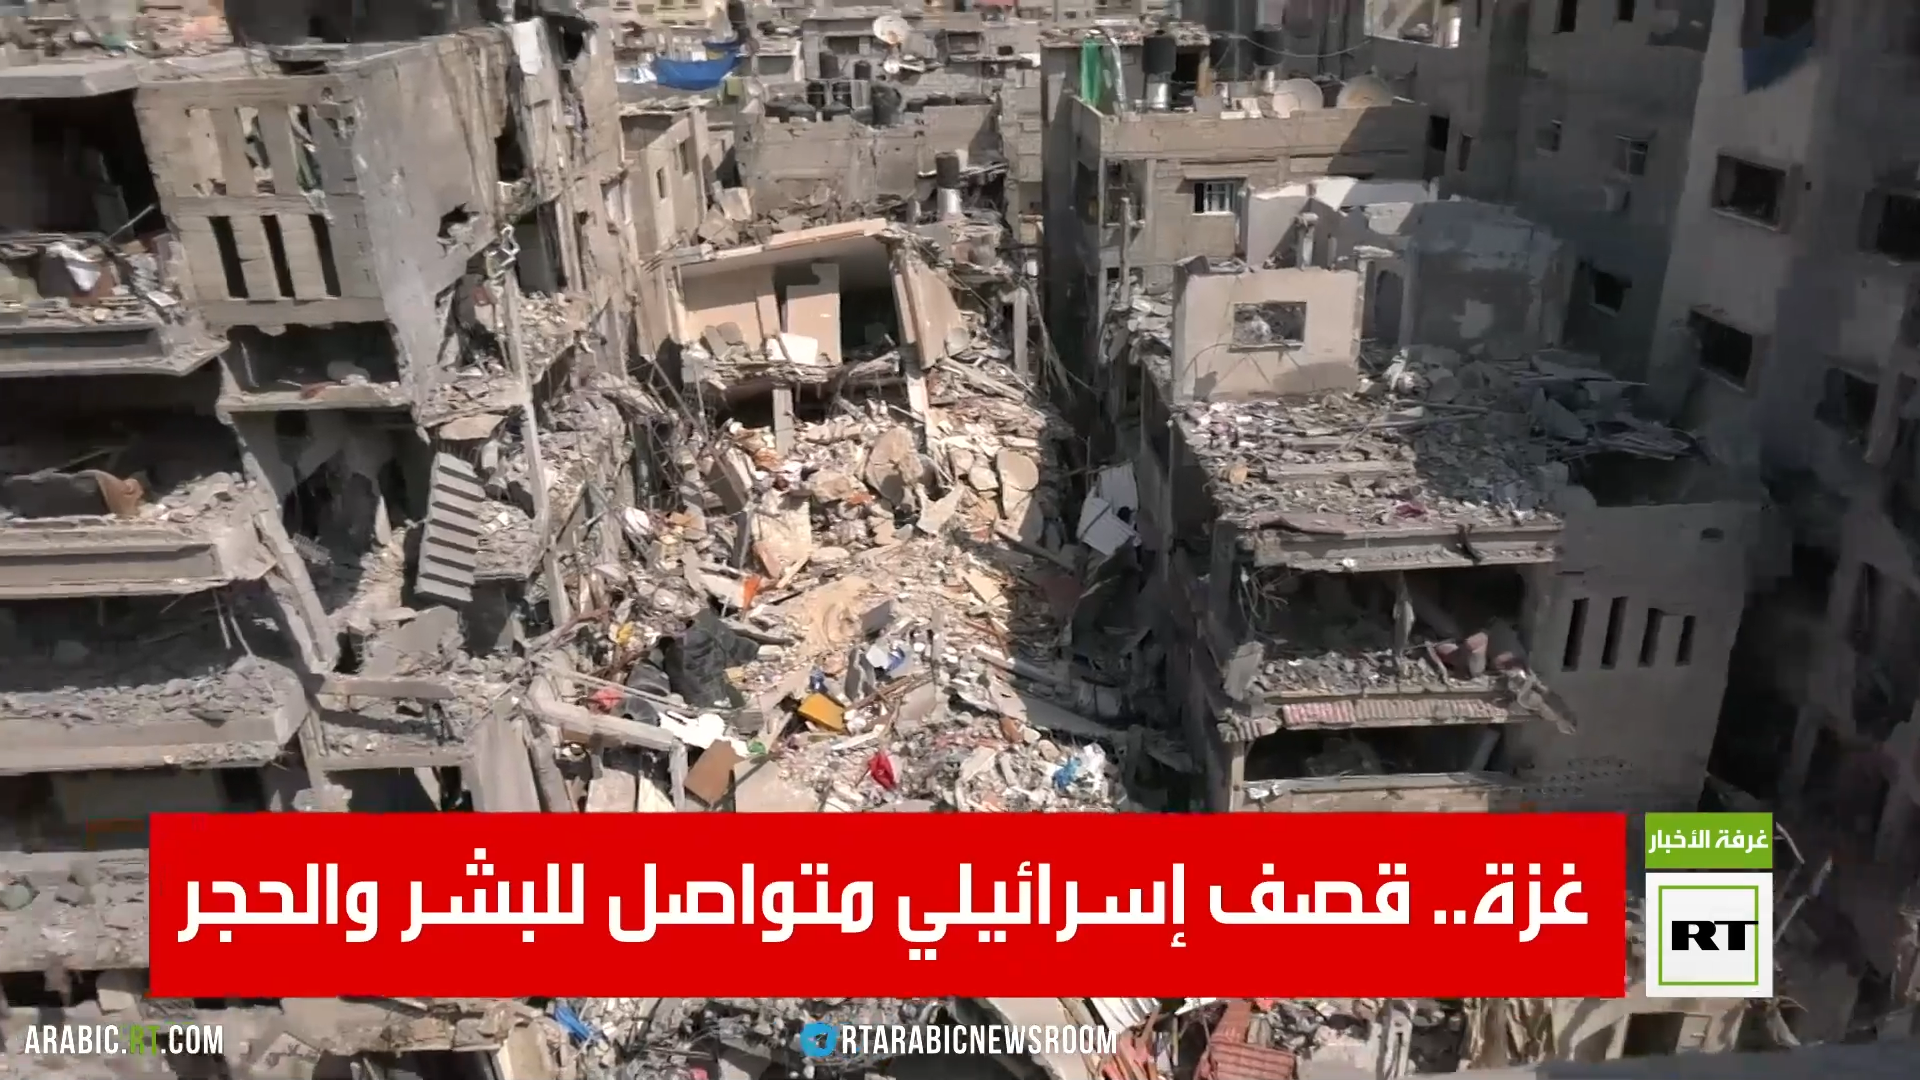 فريق RT في غزة يرصد حجم الخسائر البشرية والمادية جراء القصف الإسرائيلي على أحيـاء ومنـازل القطاع